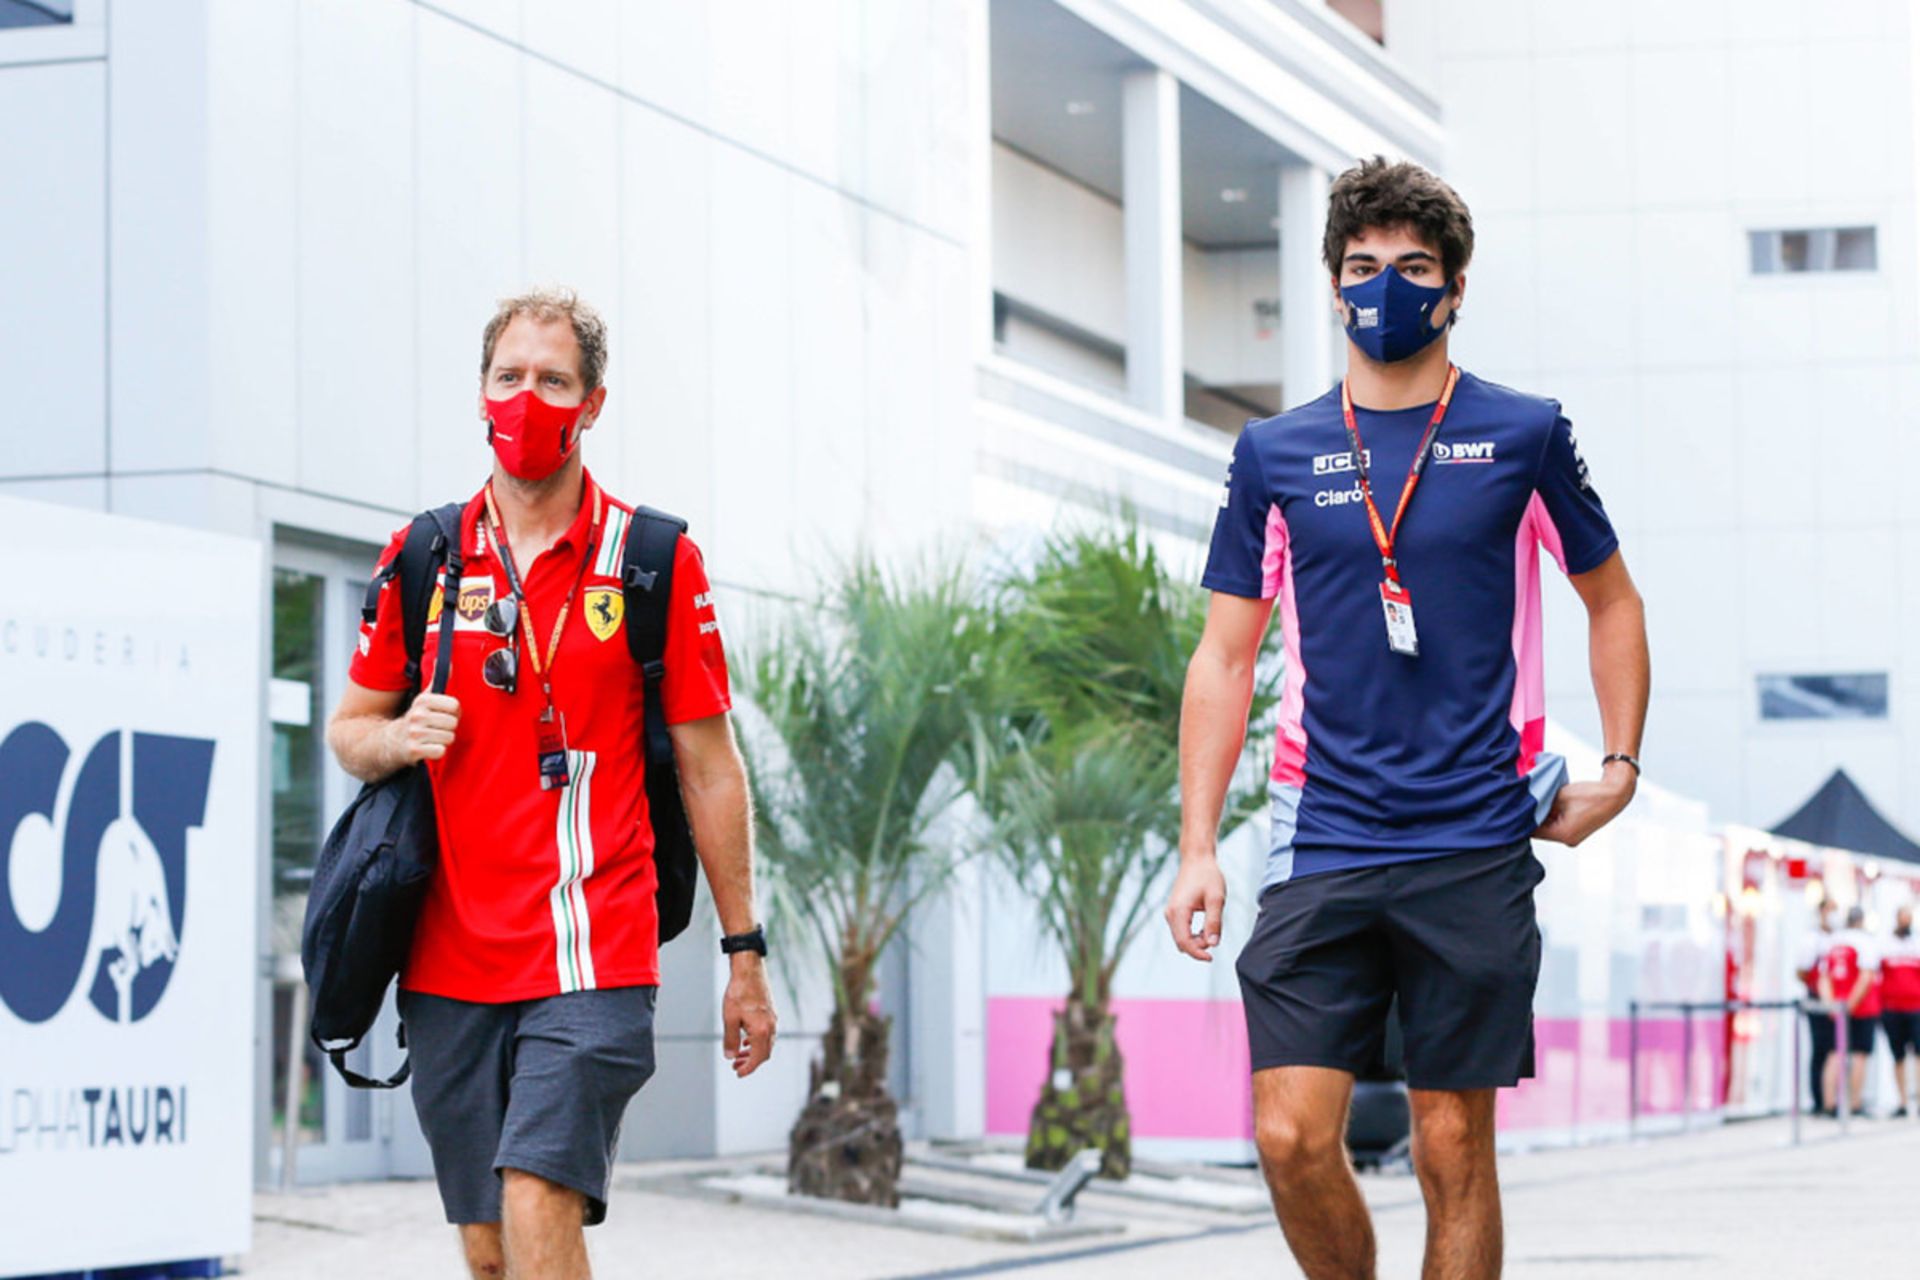 سباستین فتل و لنس استرول / Sebastian Vettel & Lance Stroll